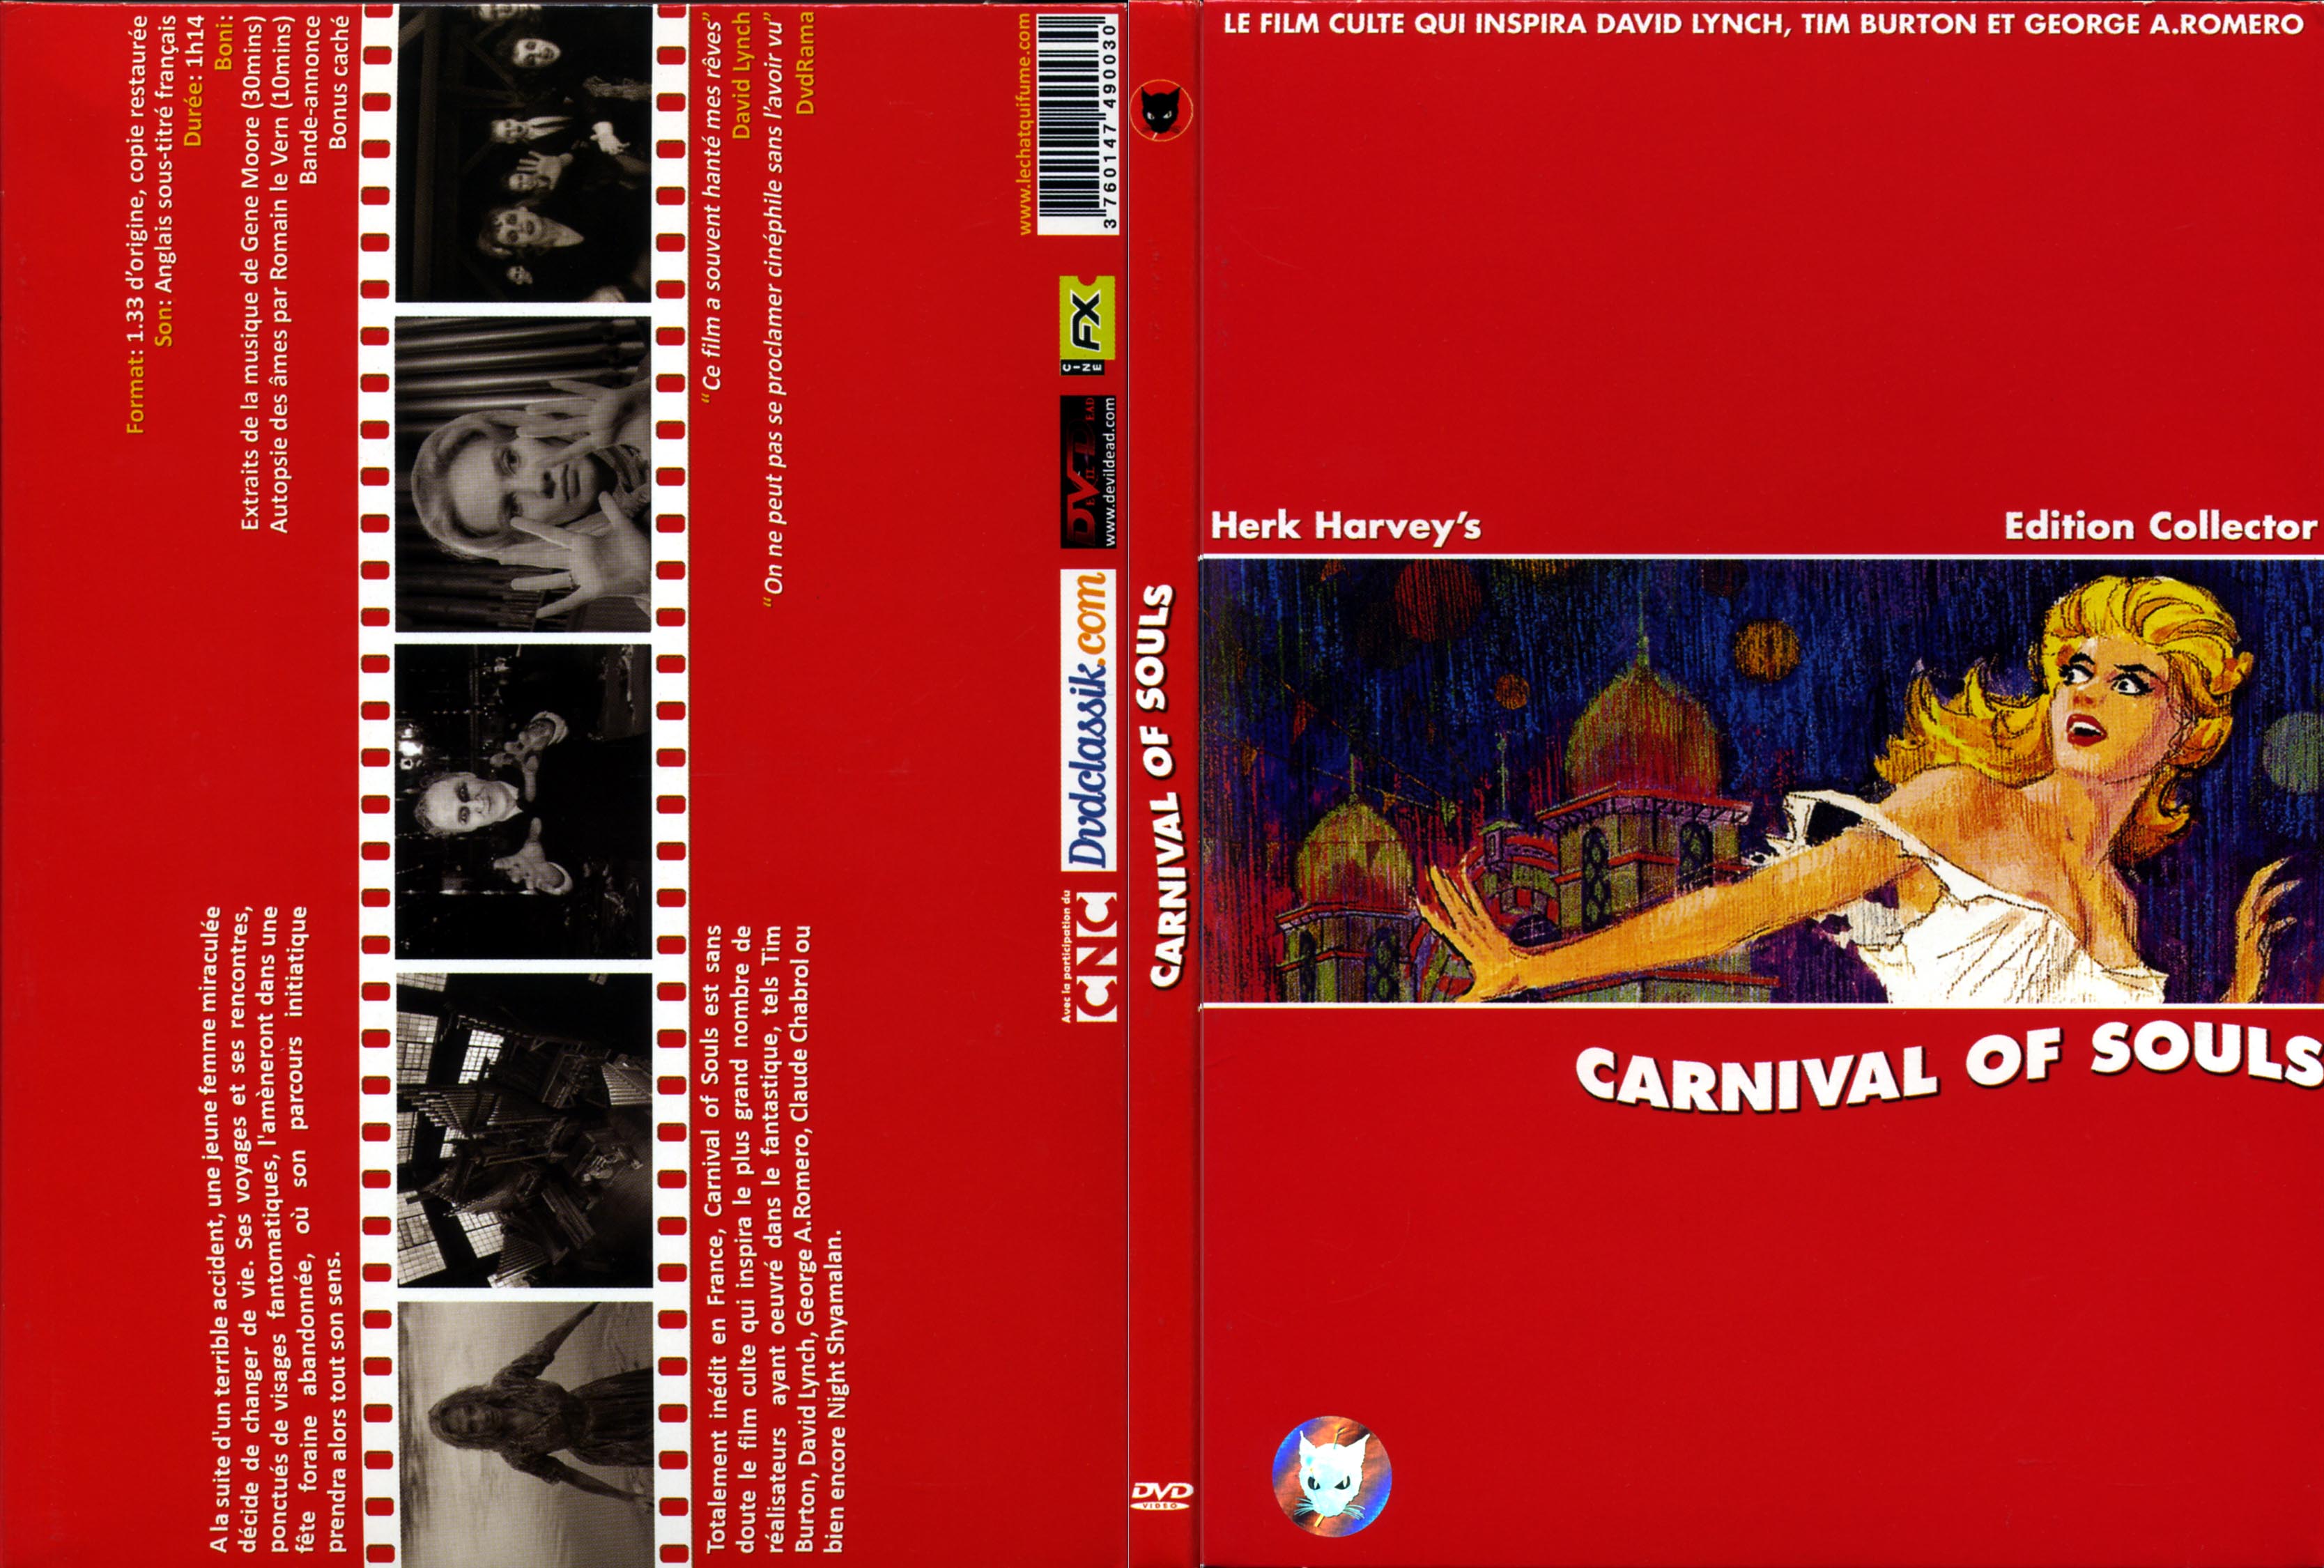 Jaquette DVD Carnival of souls v2